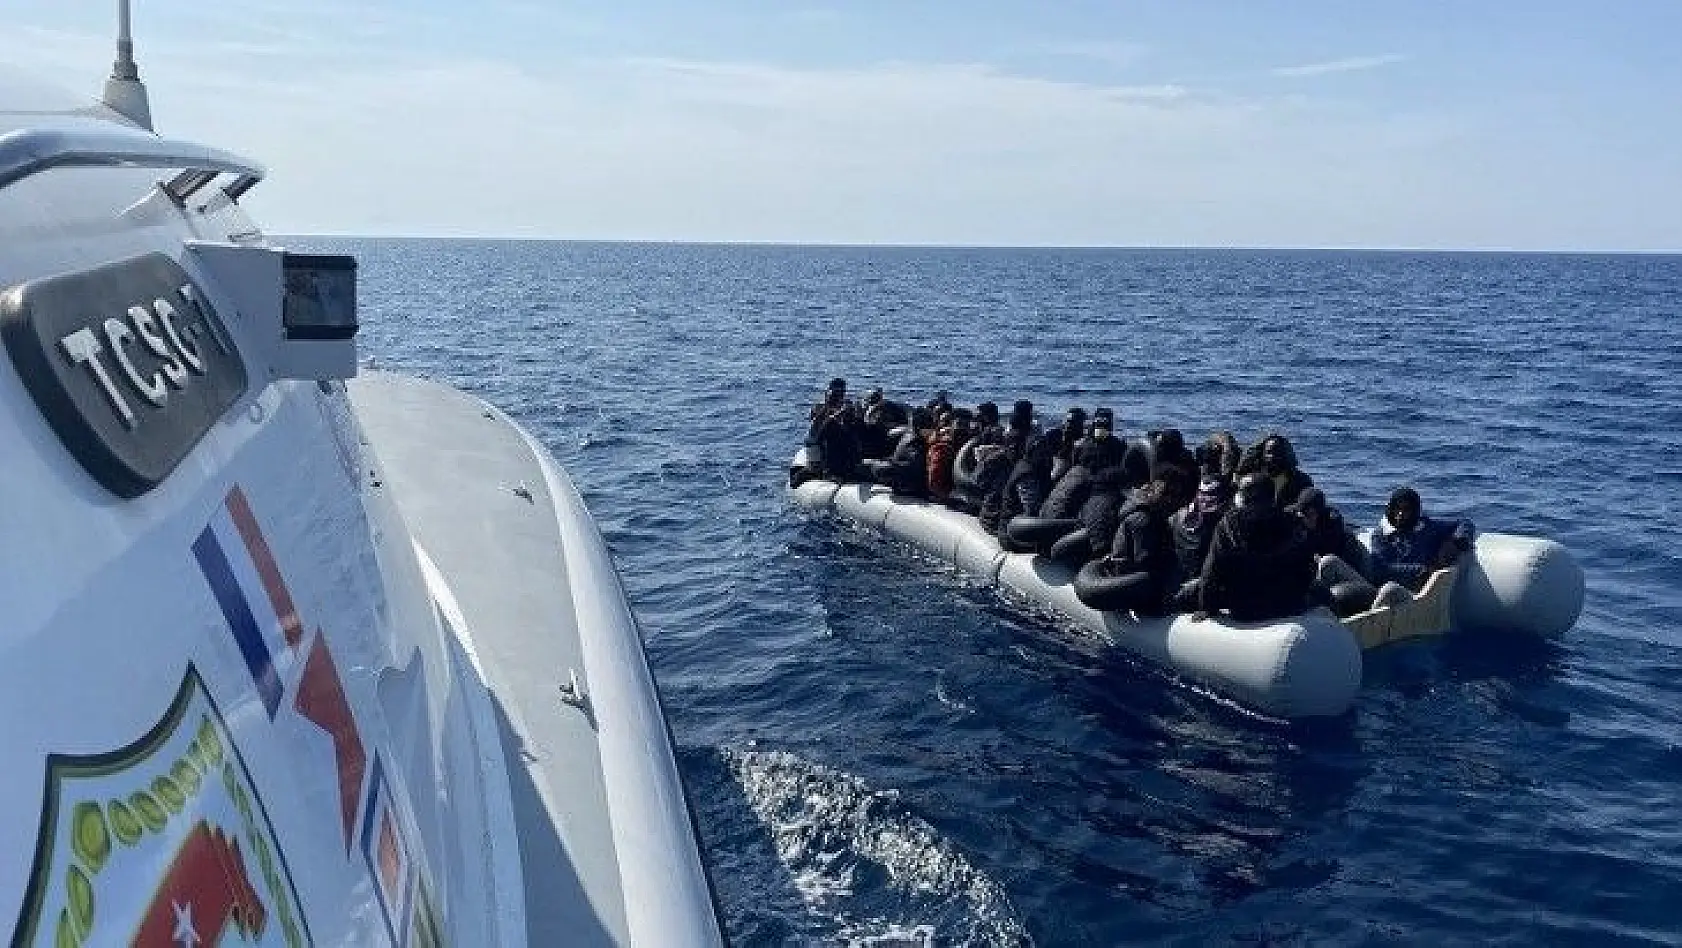 Yunan unsurlarınca geri itilen 100 düzensiz göçmen kurtarıldı